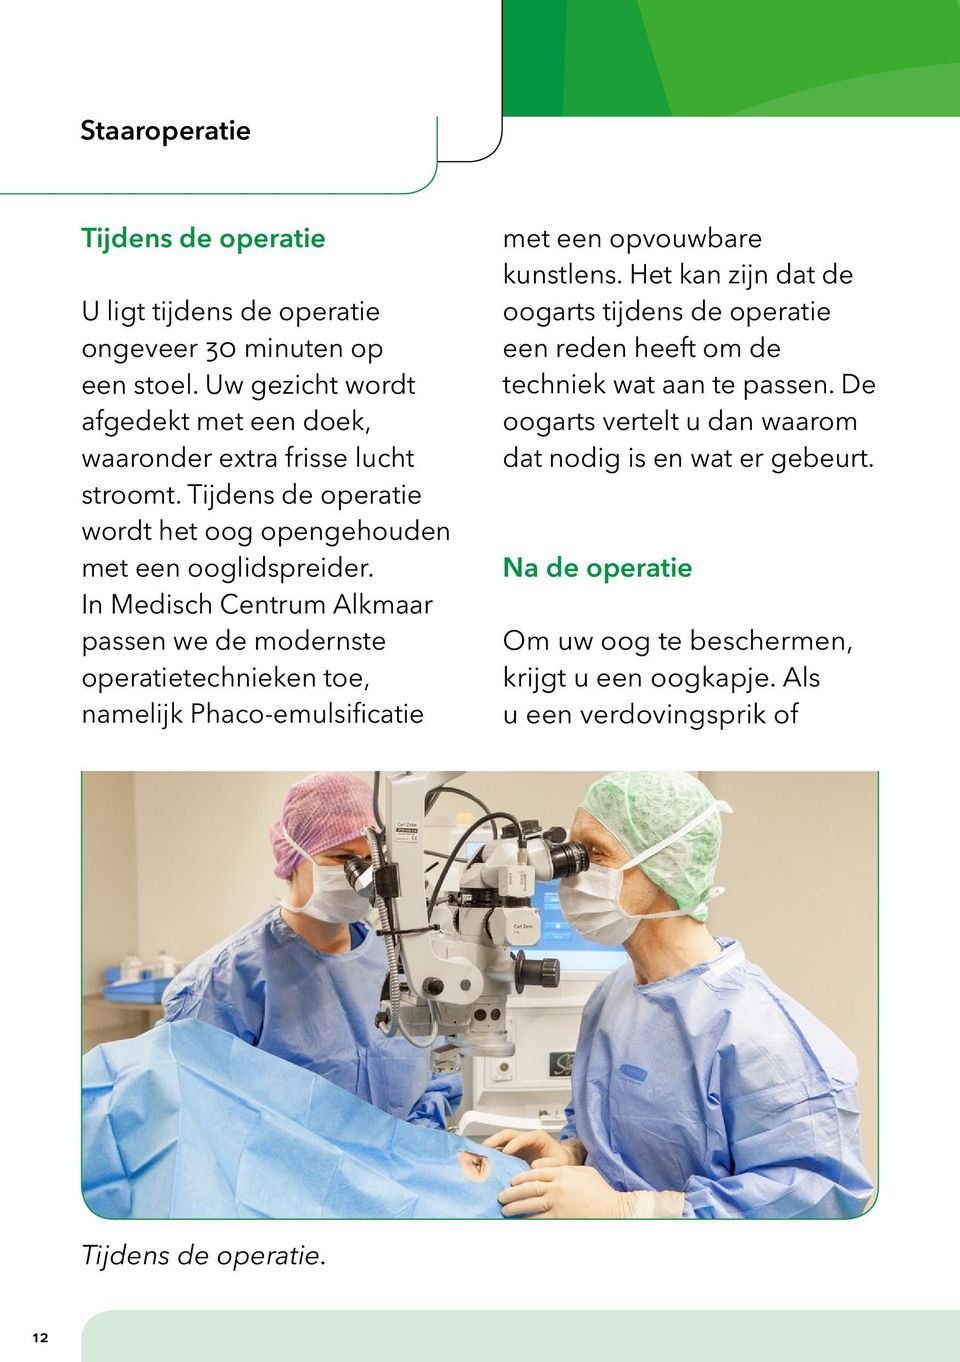 In Medisch Centrum Alkmaar passen we de modernste operatietechnieken toe, namelijk Phaco-emulsificatie met een opvouwbare kunstlens.